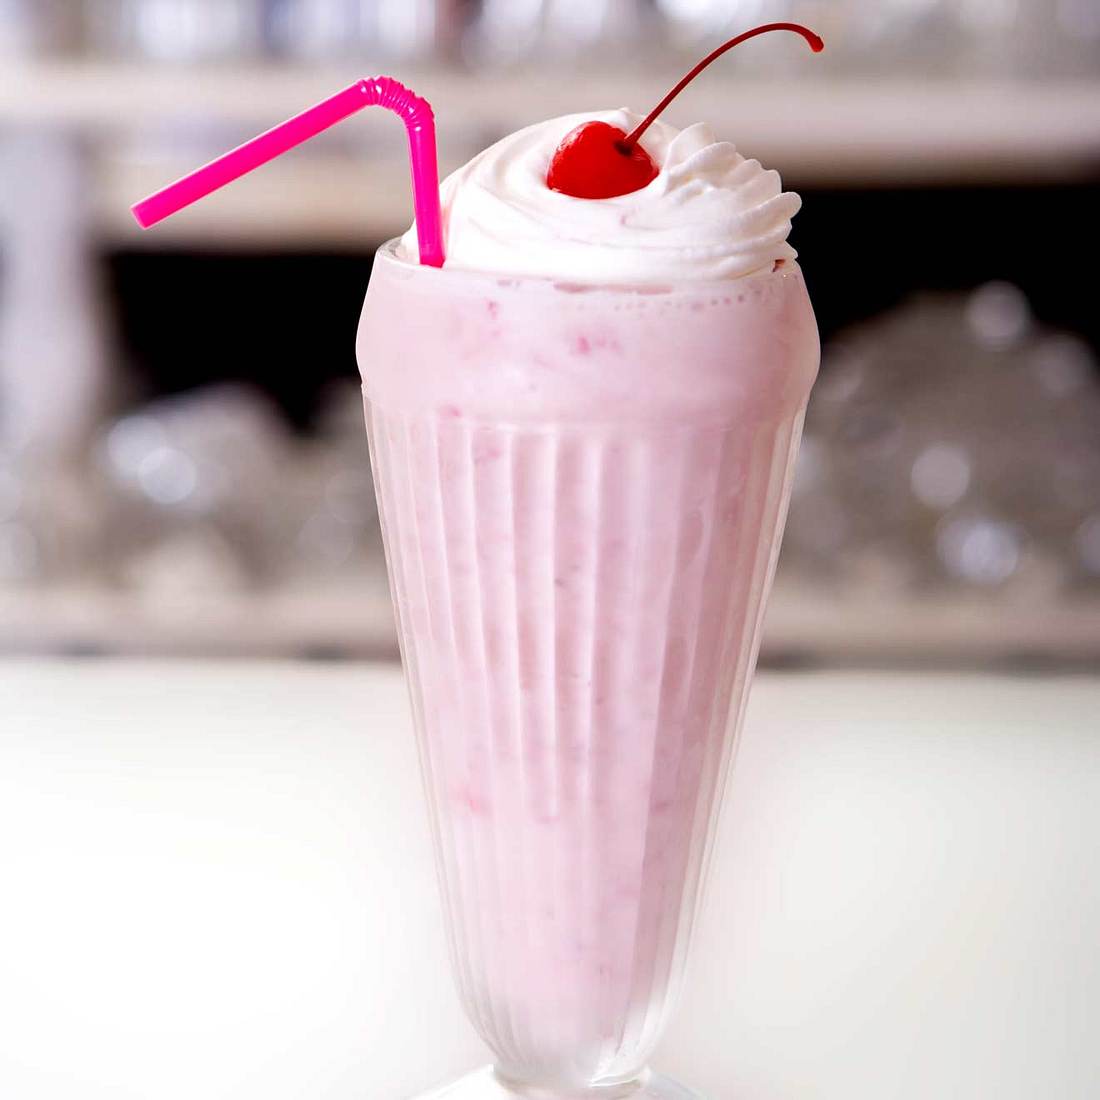 Die 30 ungesündesten Snacks der Welt Milkshake